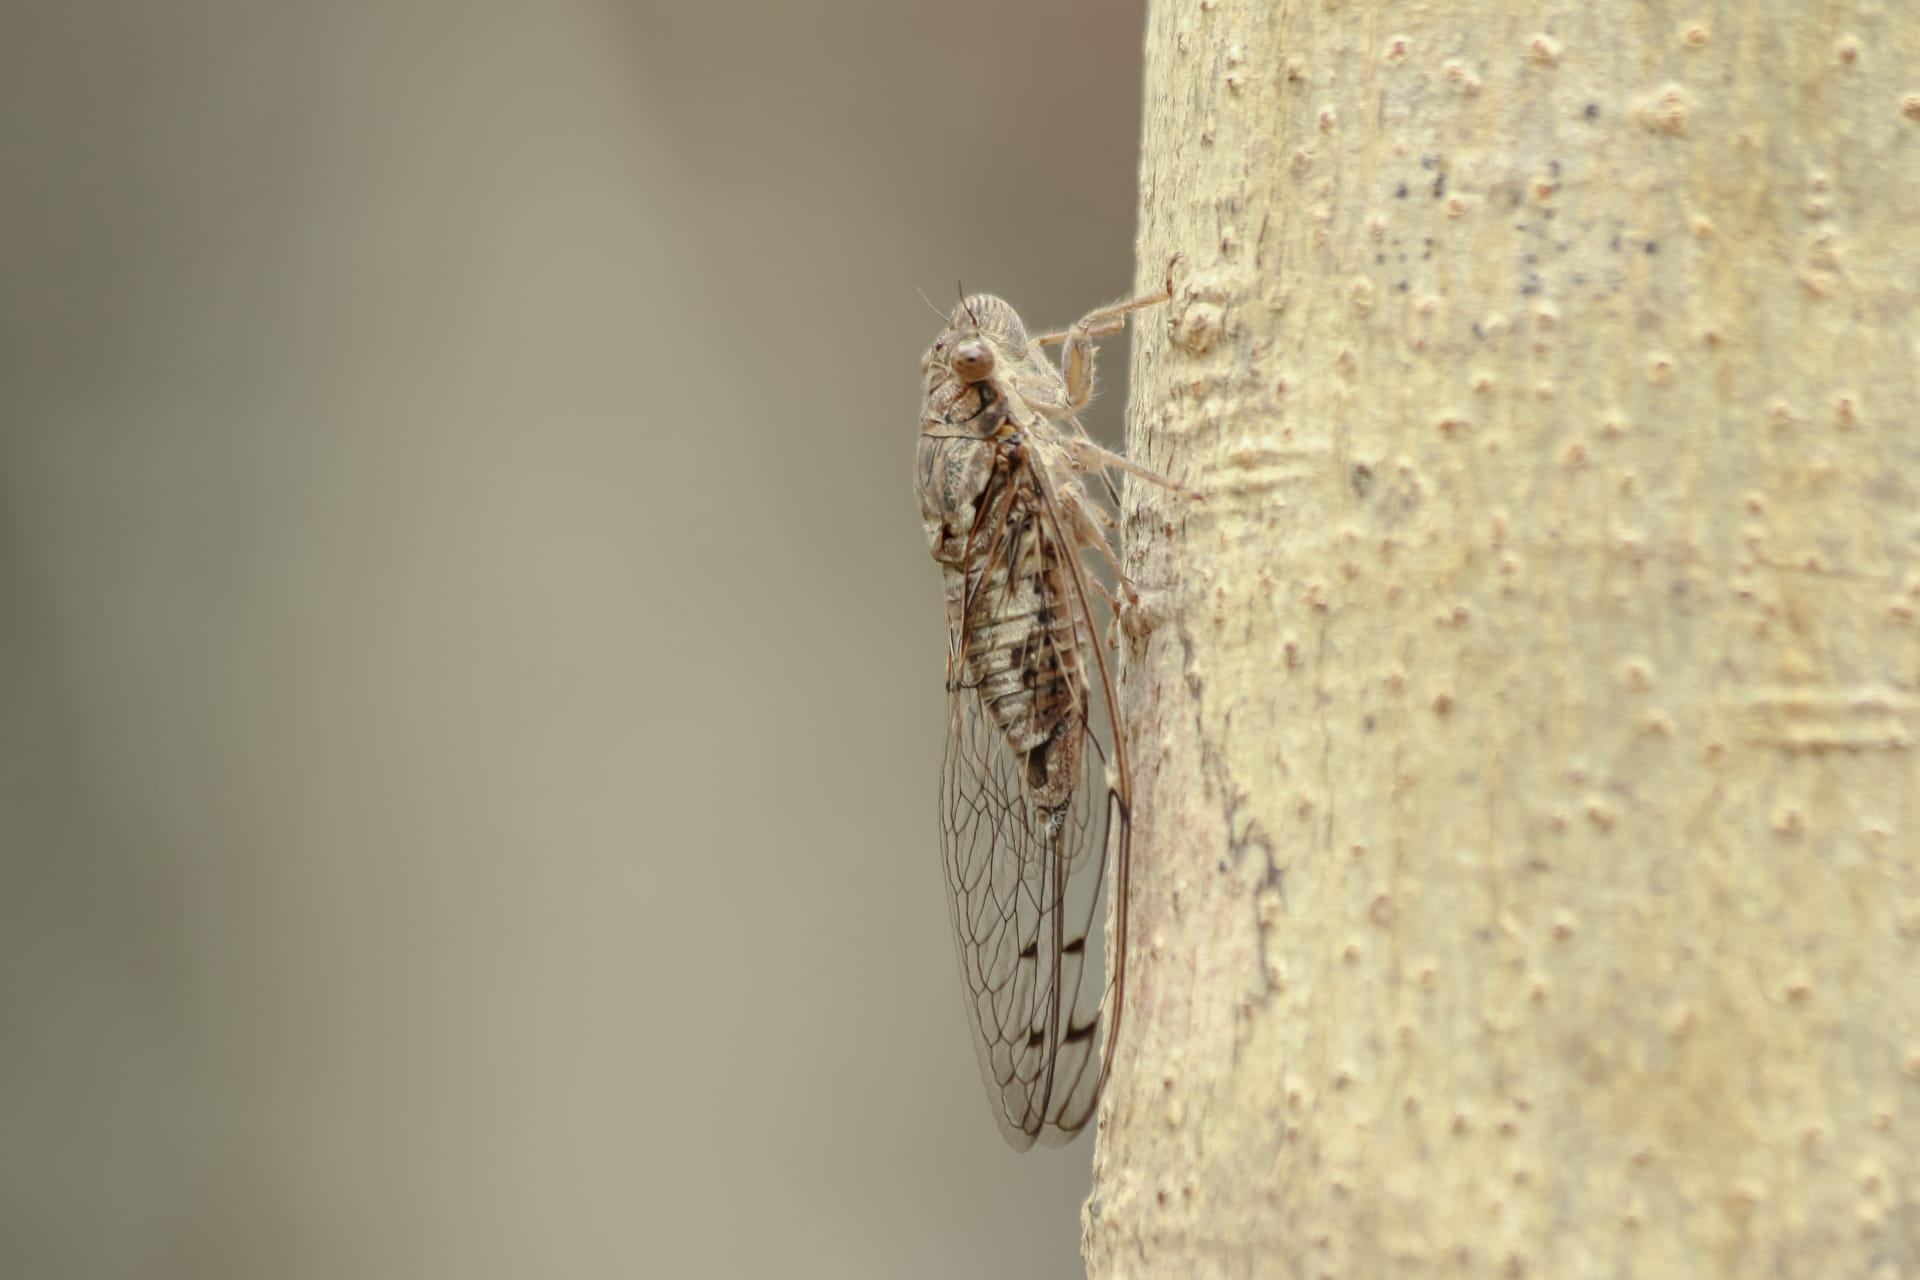 Cicada pictures